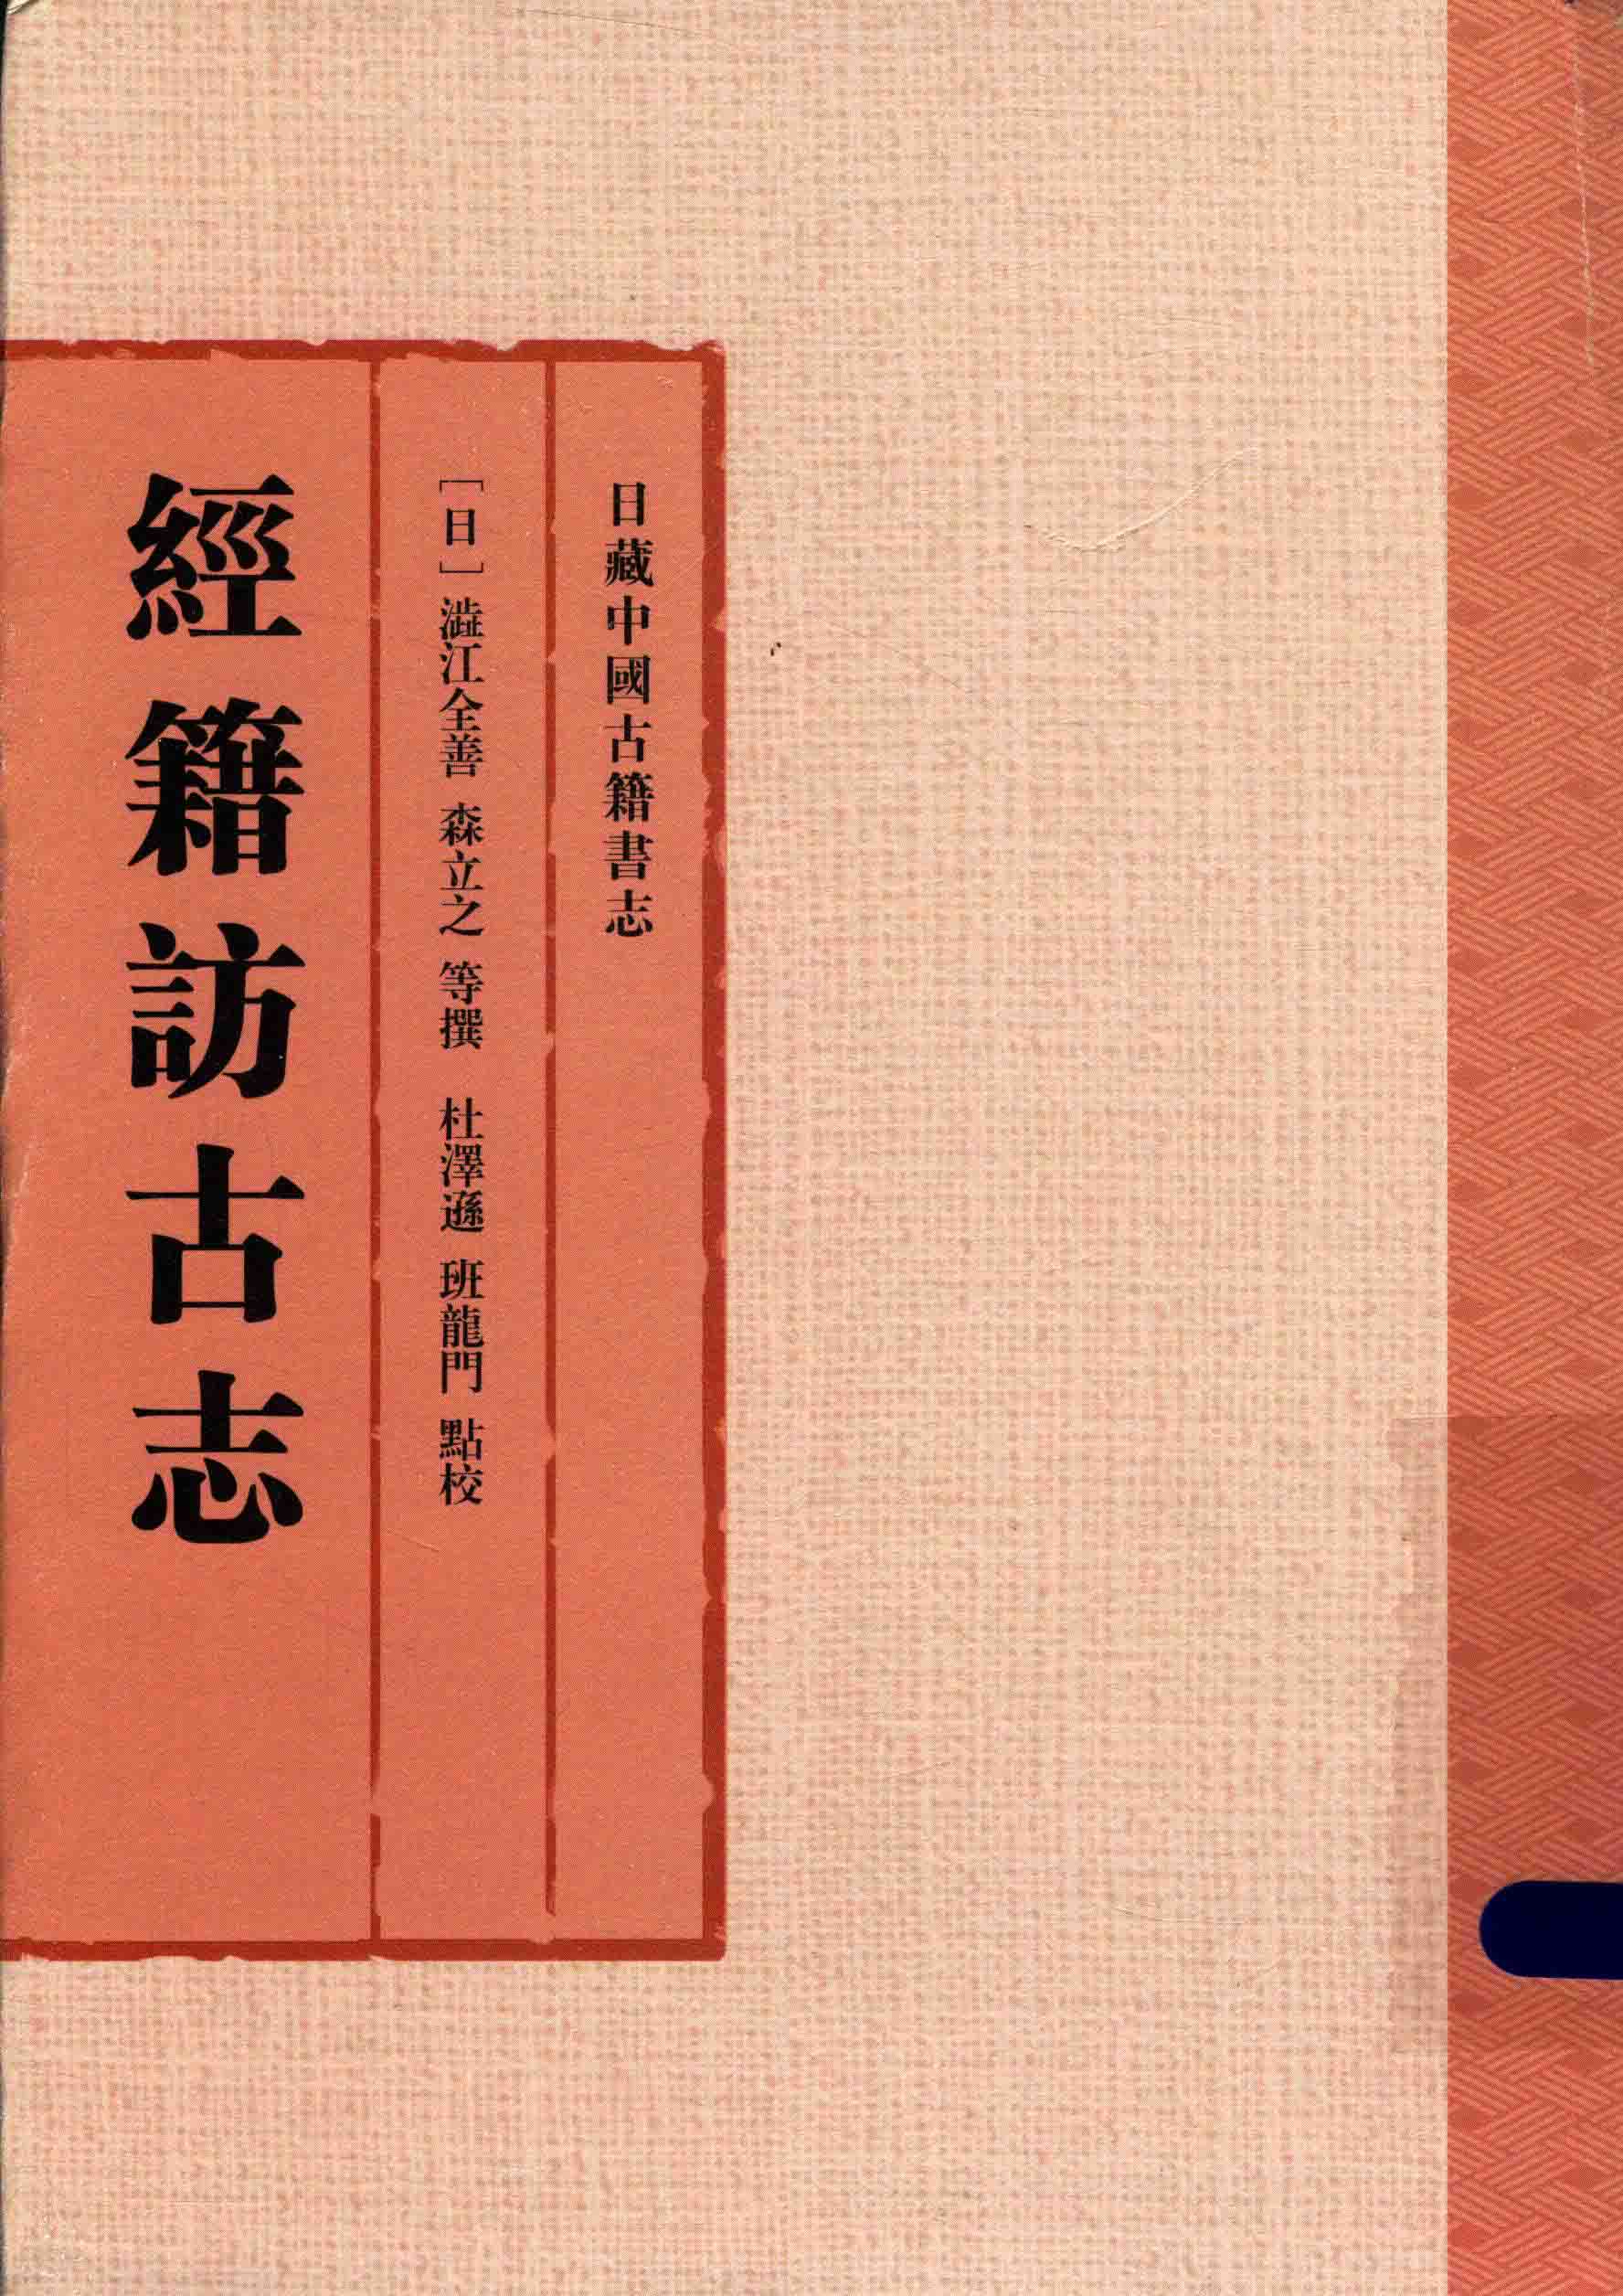 电子书- 日藏中国古籍书志上海古籍出版社2016 PDF 下载| 华夏中医论坛